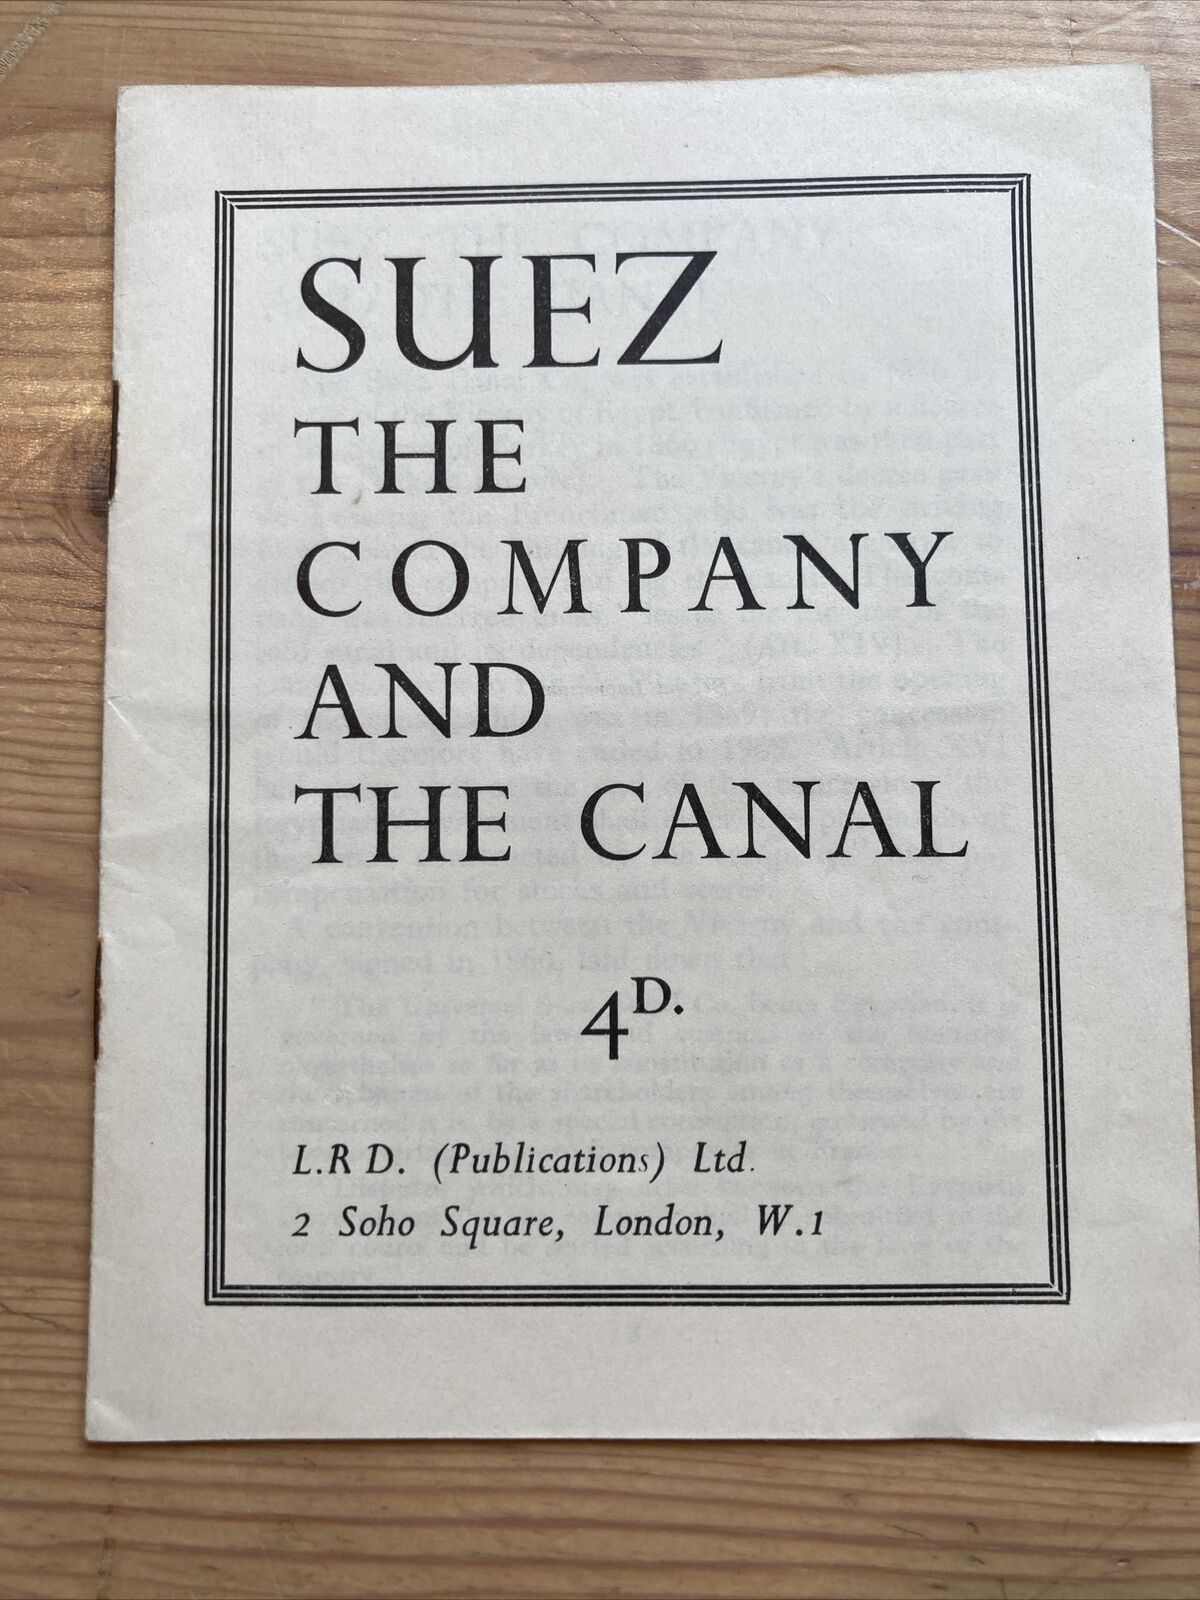 1956 Suez Crisis Pamphlet “Suez, The Company & The Canal” by Labour Research Dep